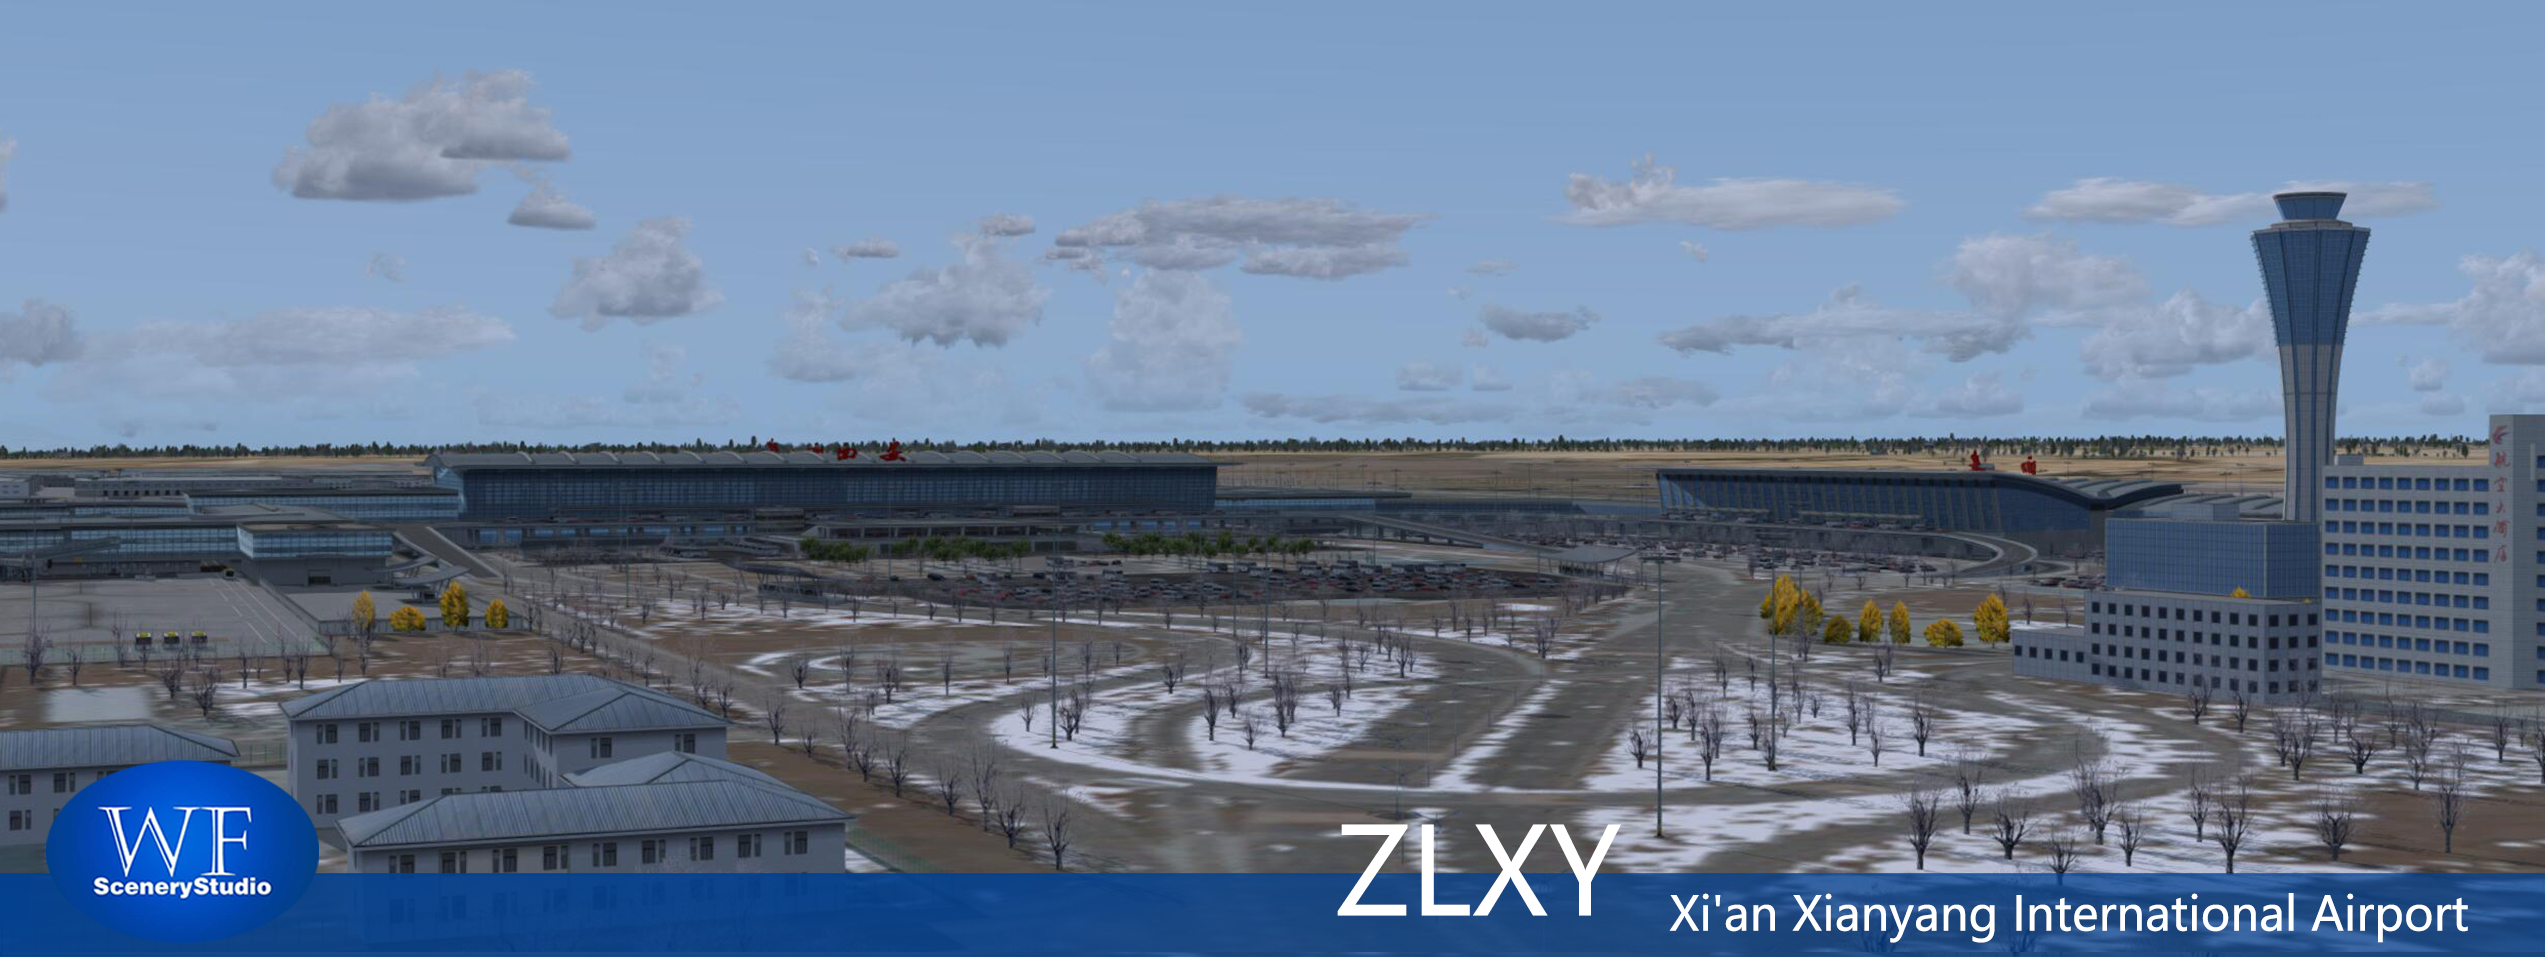 西安咸阳国际机场FSX和P3DV3 版本发布-9768 